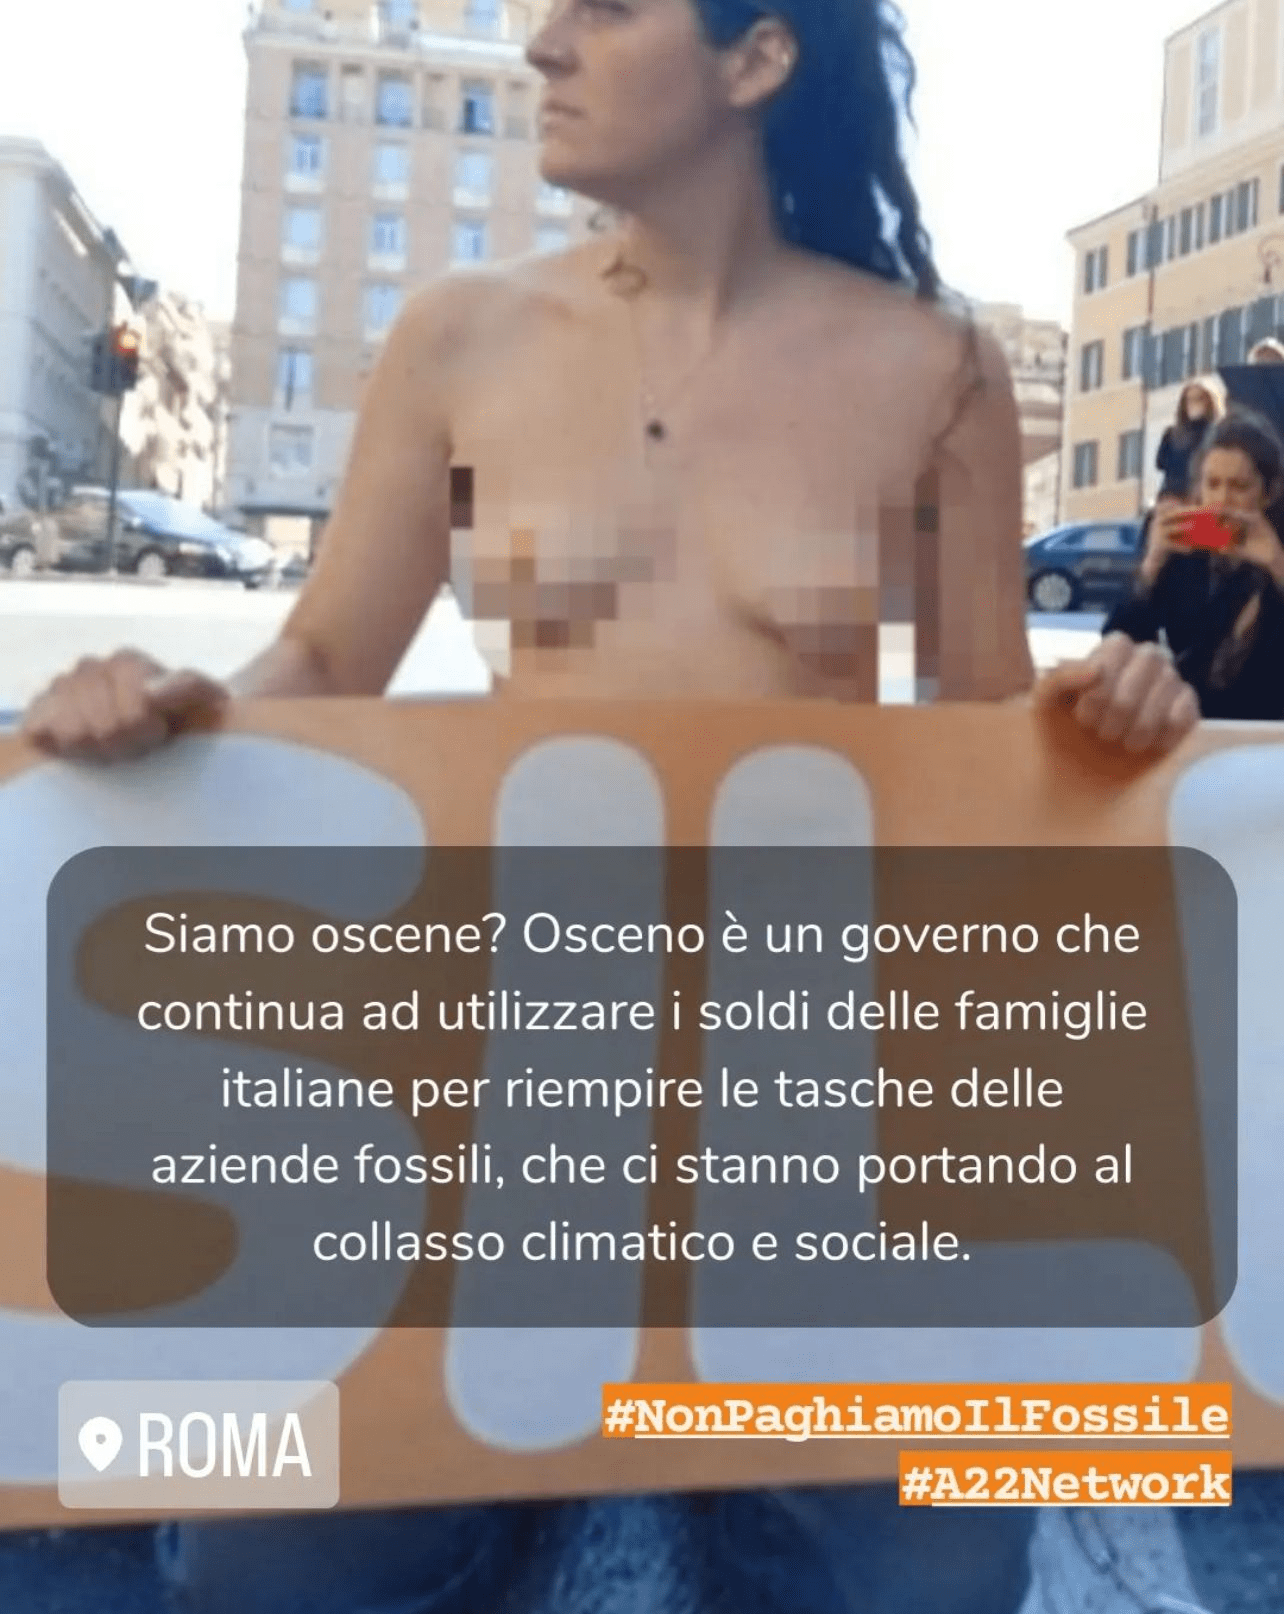 Attiviste nude in Via del Tritone